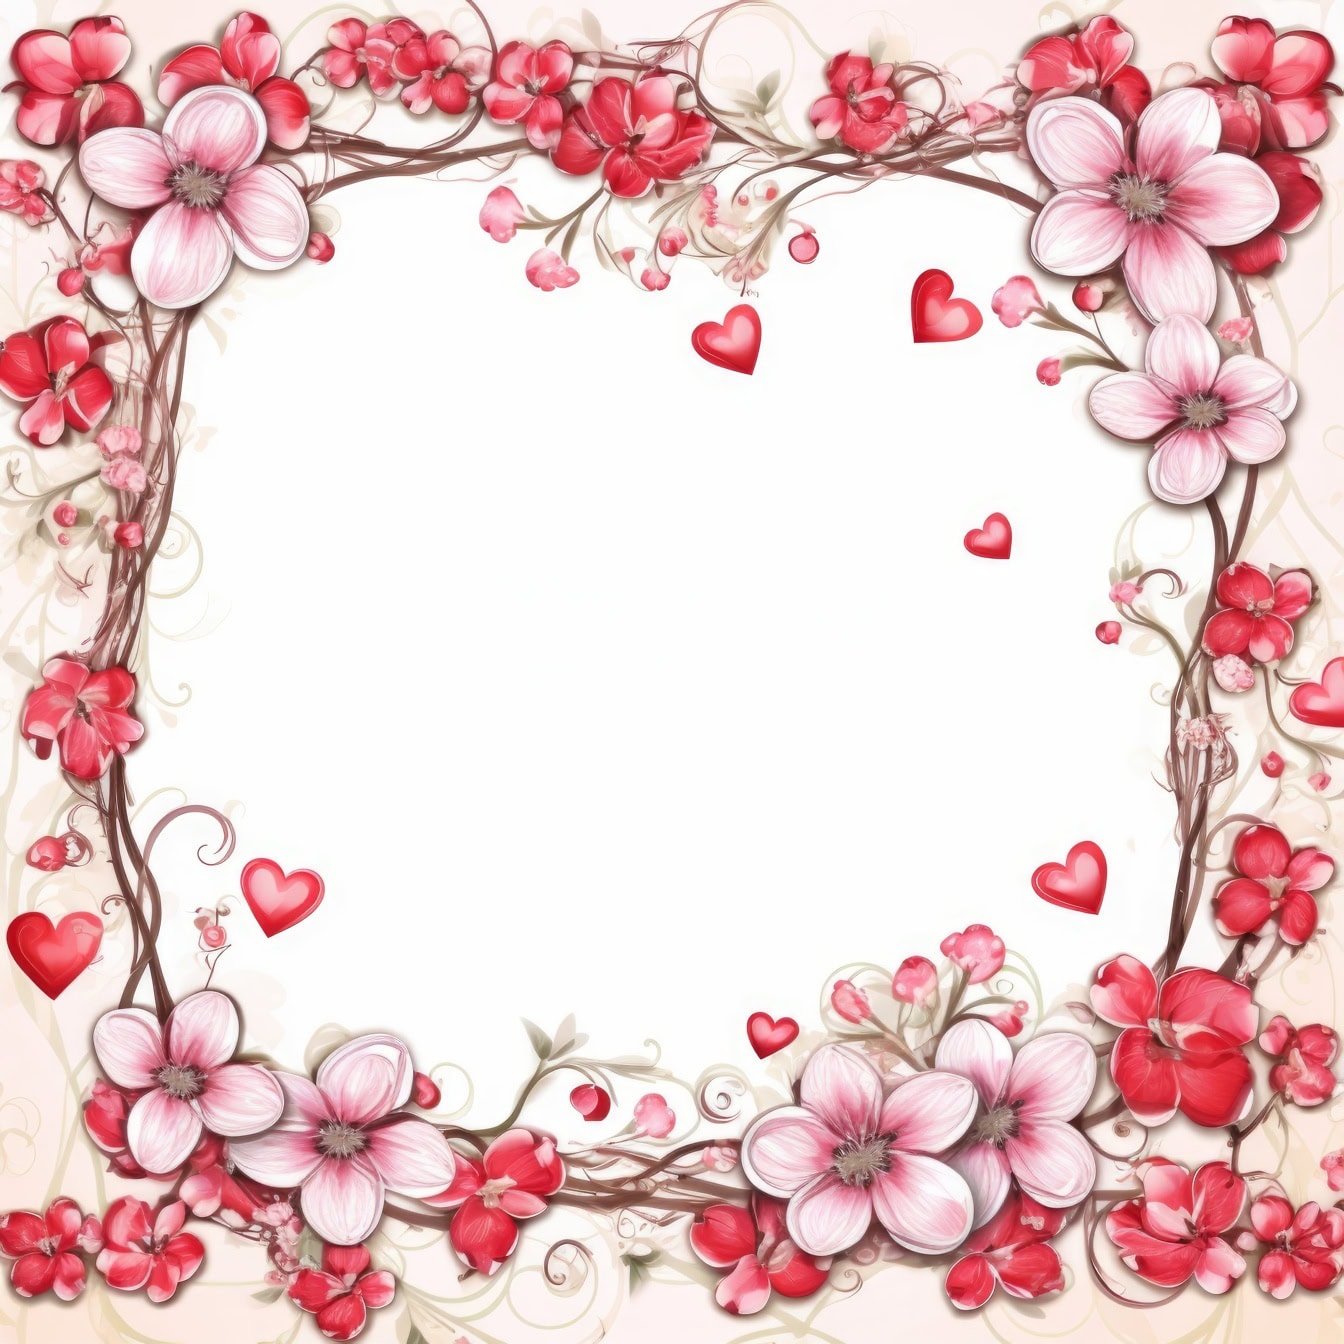 Romantisk lykønskningskort skabelon med ramme af blomster og hjerter i lyserøde toner